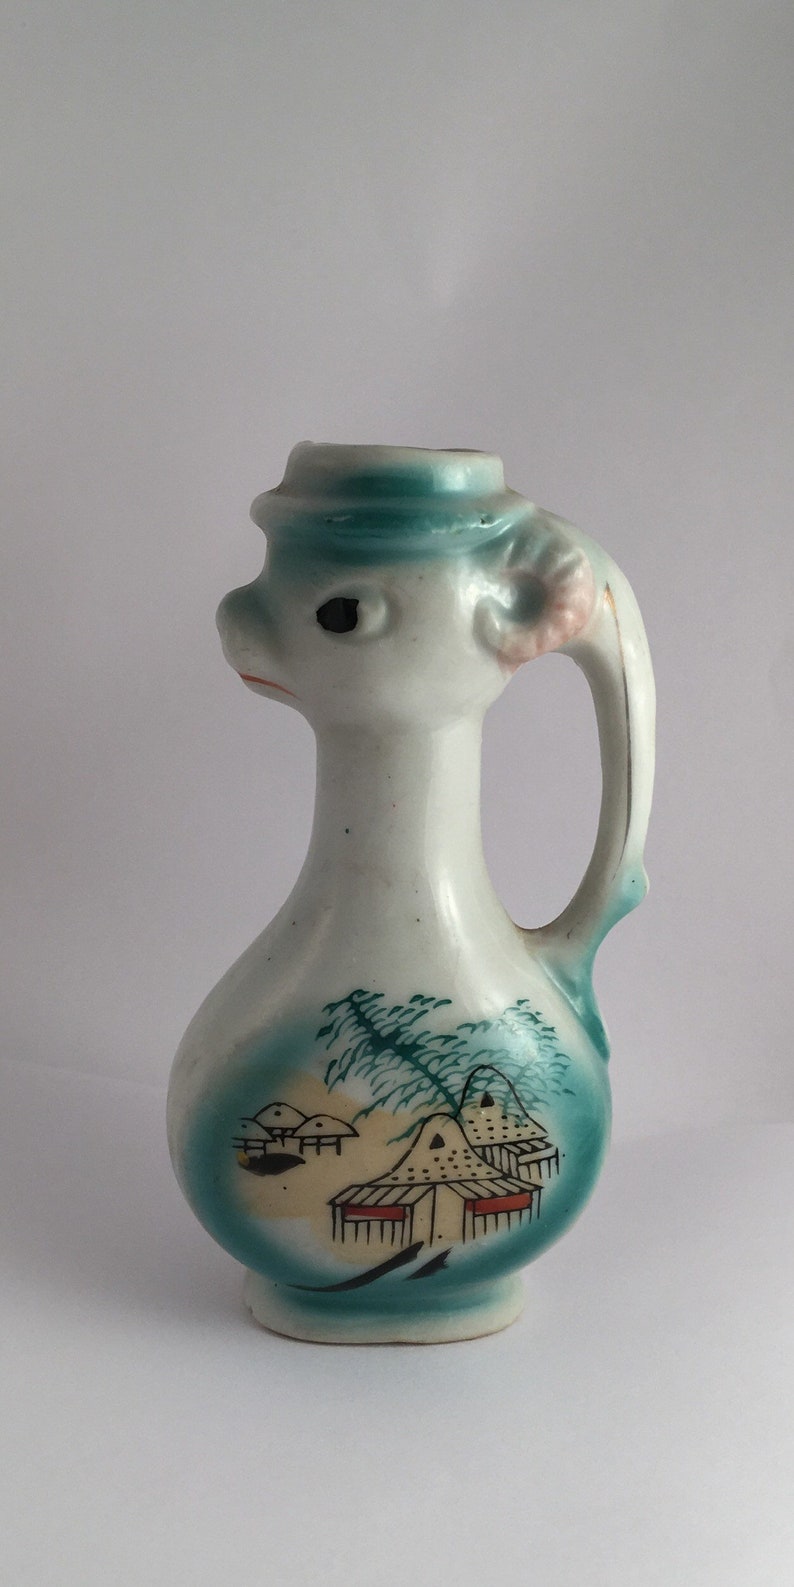 Horned Sheep or Goat Bud Vase Unusual Vintage Collectible Porcelain Ceramic